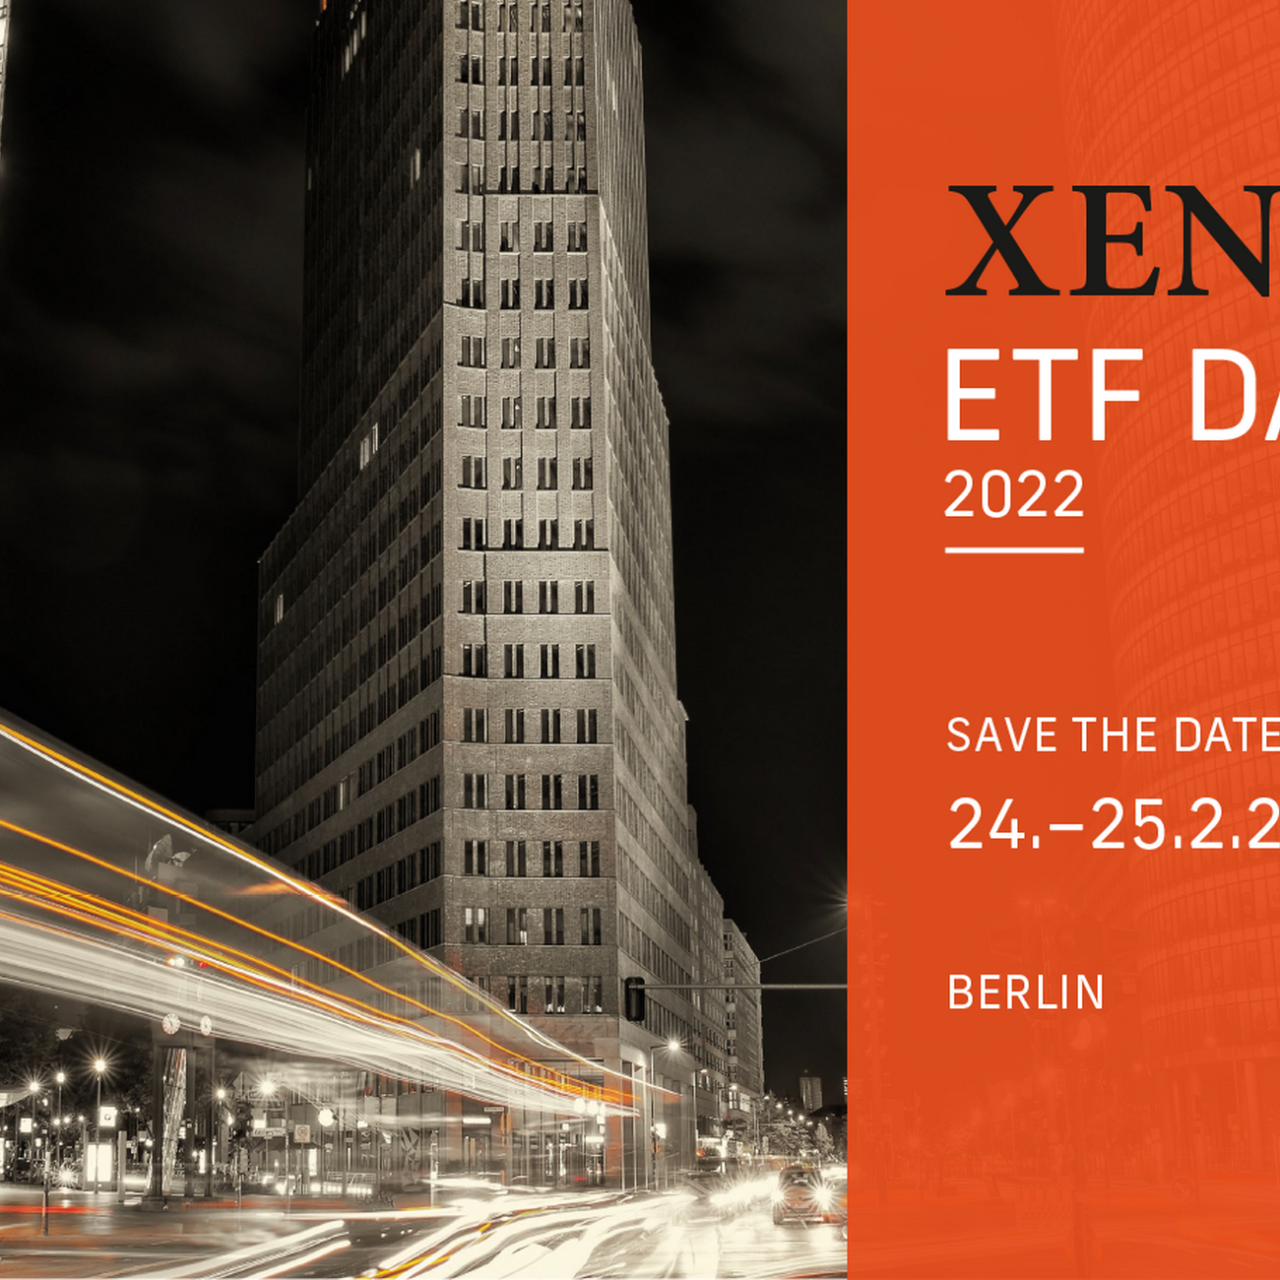 XENIX ETF DAYS 2022 in Berlin / II als Medienpartner